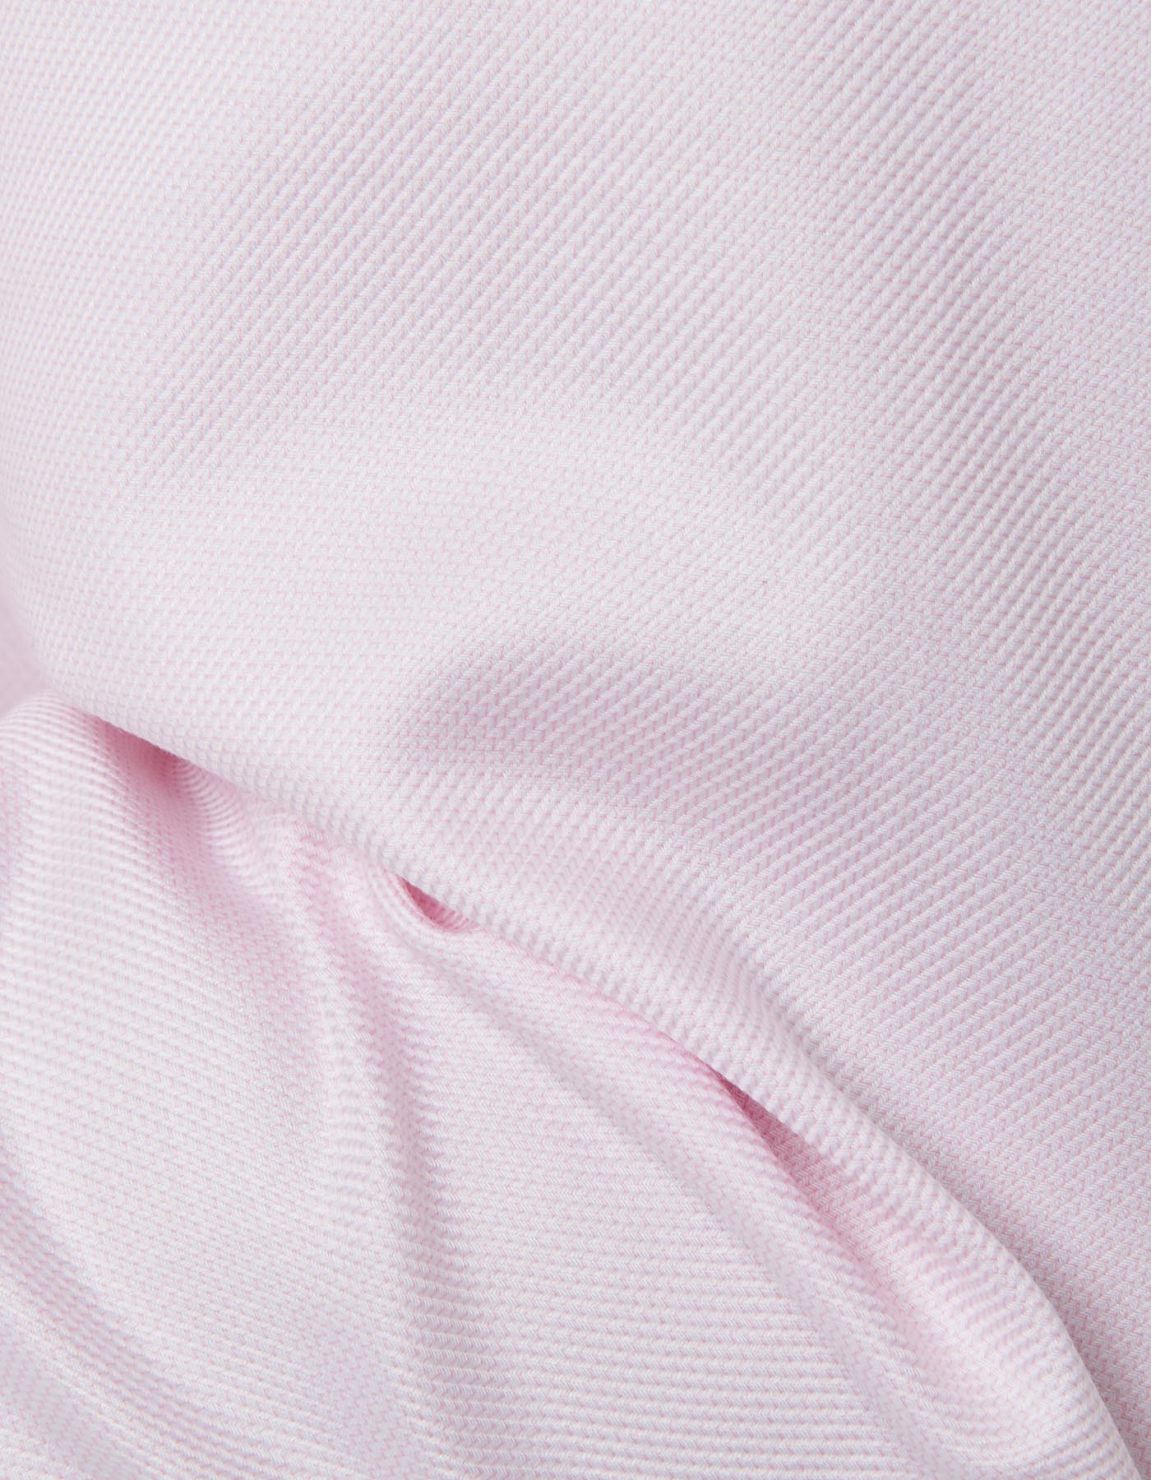 Camicia Collo italiano Fantasia Armaturato Rosa scuro Tailor Custom Fit 4